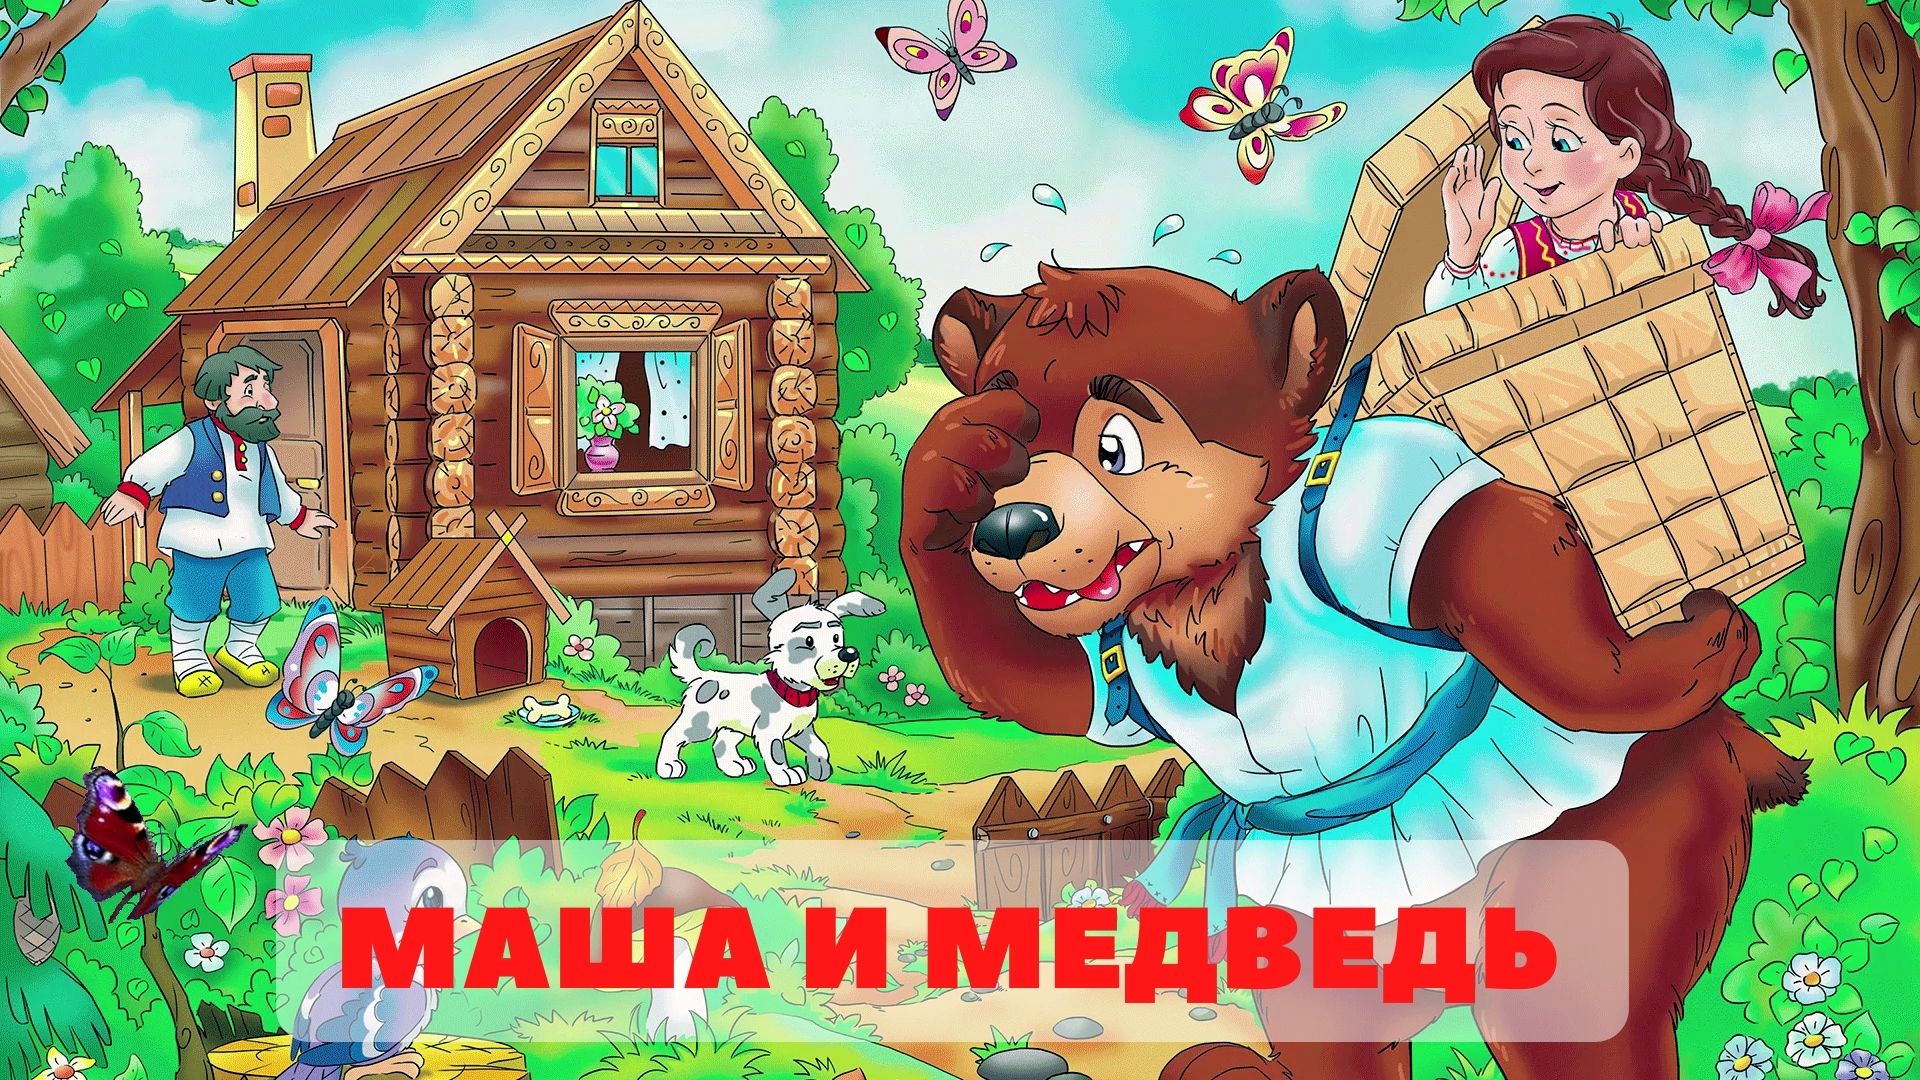 Маша и медведь русская народная сказка слушать. Сказка Маша и медведь. Маша и медведь сказка картинки. Маша и медведь сказка на ночь. Иллюстрации к сказке Маша и медведь русская народная сказка.